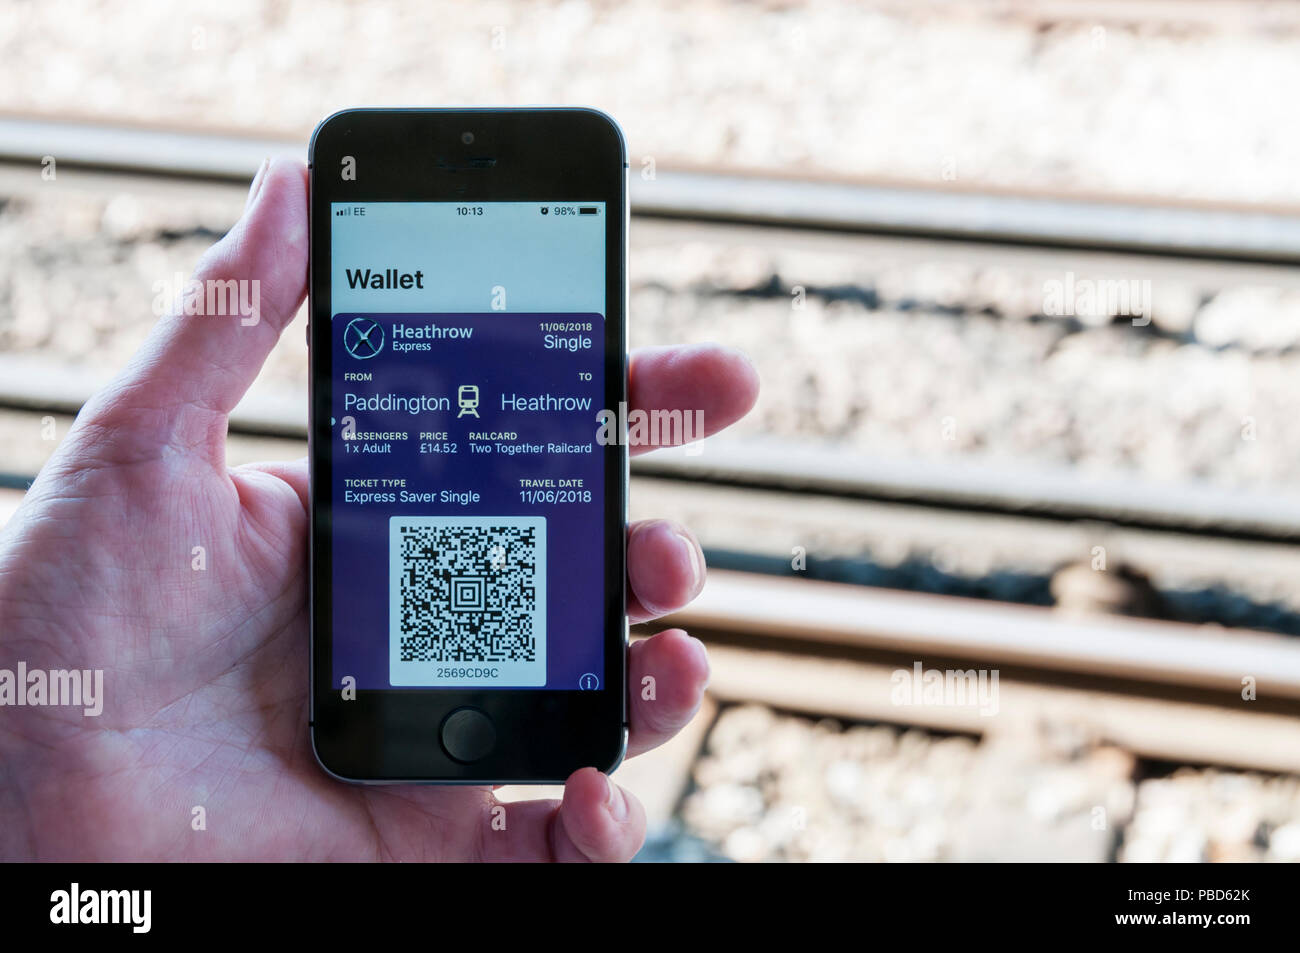 Portafogli app su iphone mostra il codice QR per biglietti ferroviari su Heathrow express tra le stazione di Paddington e Heathrow. Foto Stock